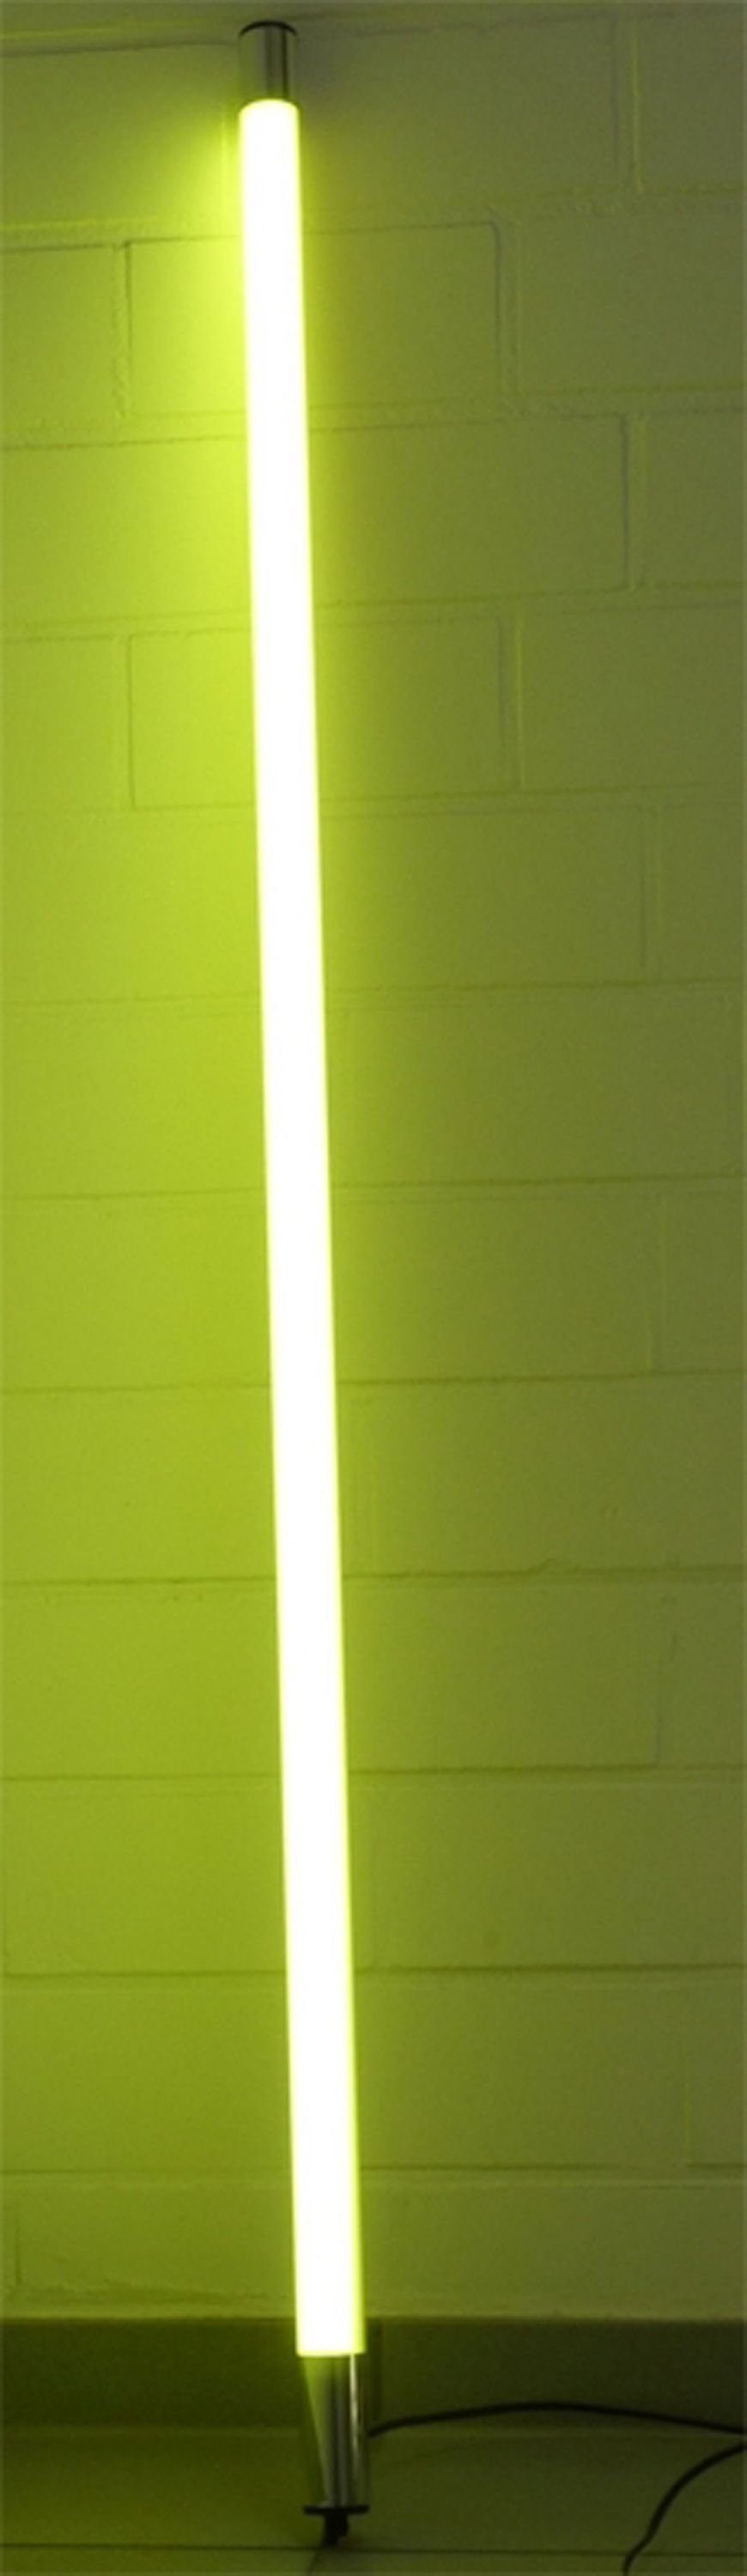 XENON LED Wandleuchte 8383 LED Leuchtstab Satiniert 1,53m Lang 2200 Lumen IP44 Außen Gelb, LED, Xenon / Gelb | Wandleuchten